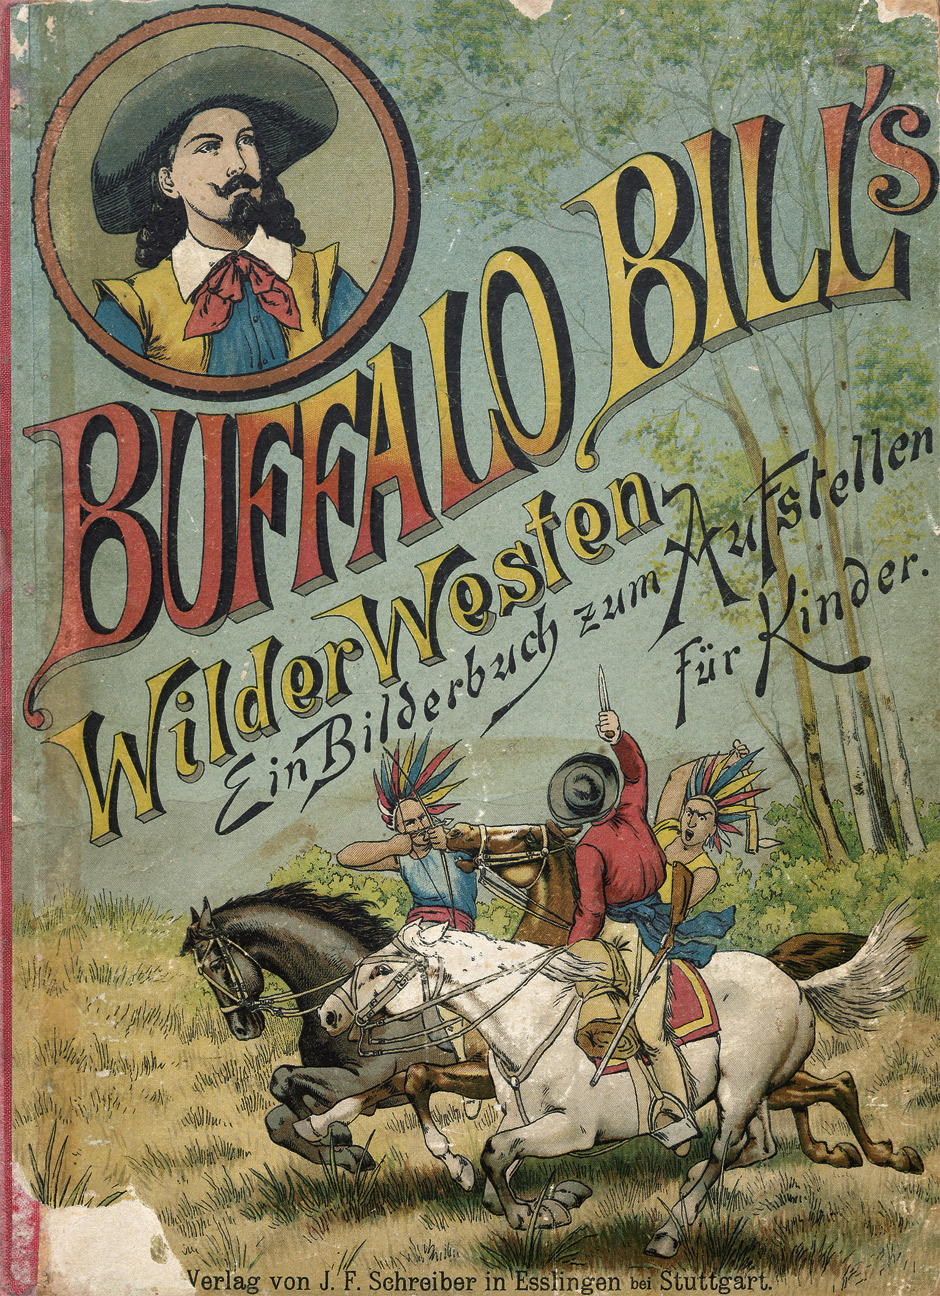 Lot 2232, Auction  115, Buffalo Bill's Wilder Westen, Ein Bilderbuch zum Aufstellen für Kinder